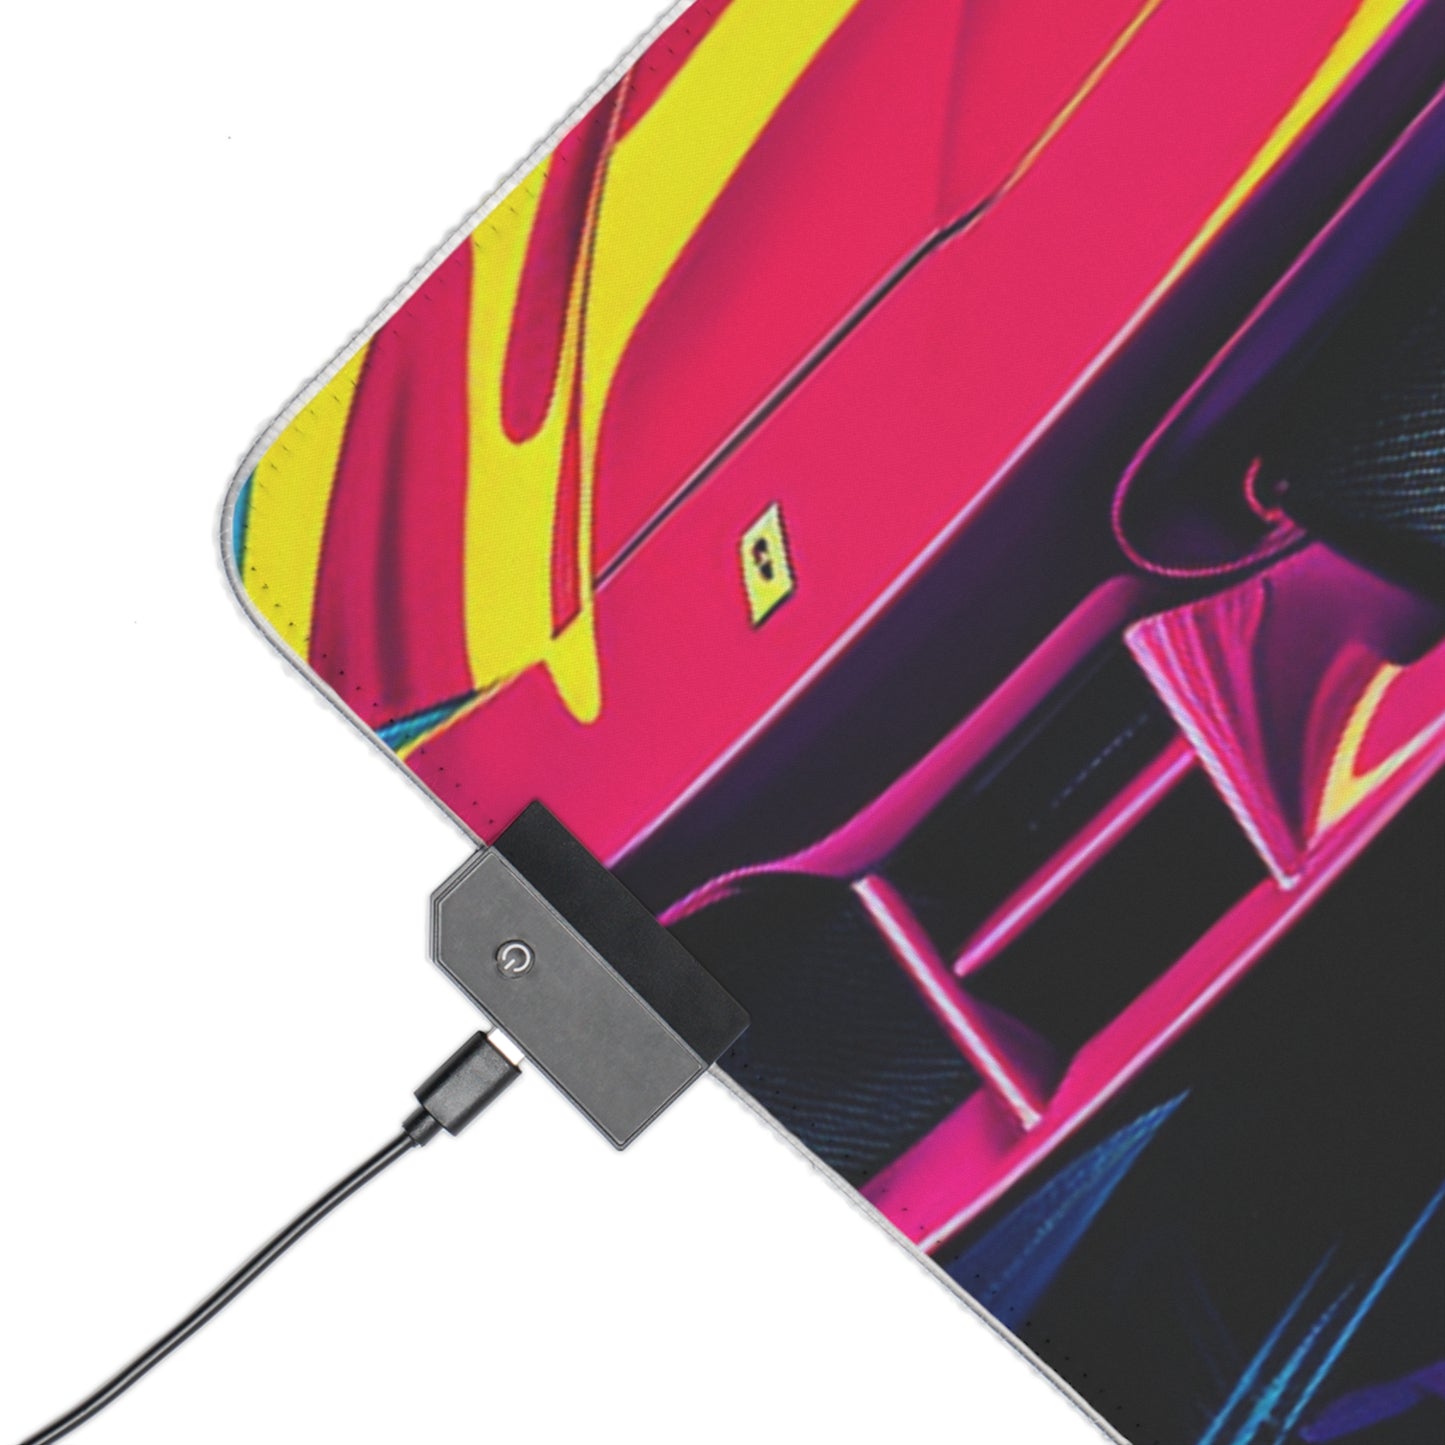 LED Gaming Mouse Pad Pink Ferrari Macro 1